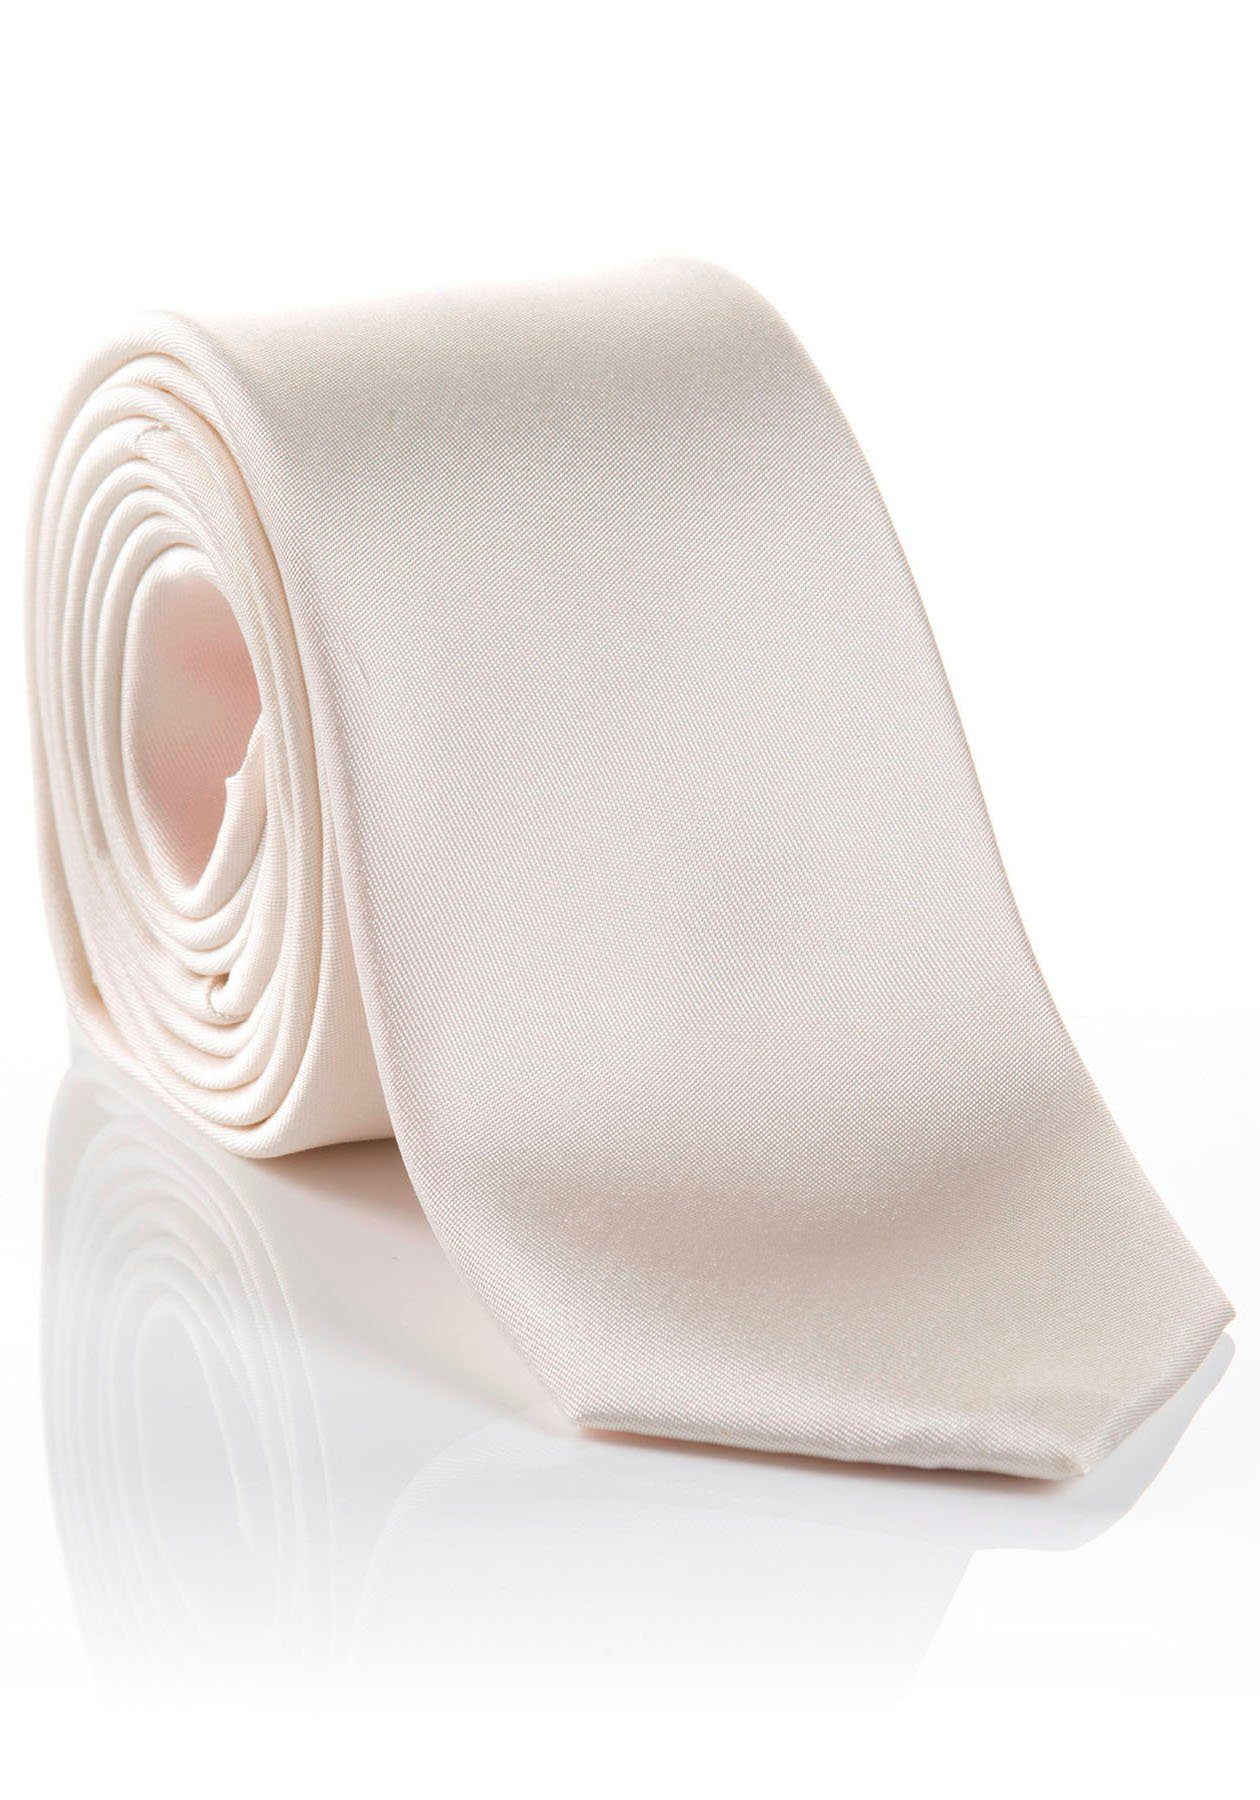 MONTI Krawatte verarbeitete mit Seidenkrawatte hohem Hochwertig Tragekomfort LIVIO